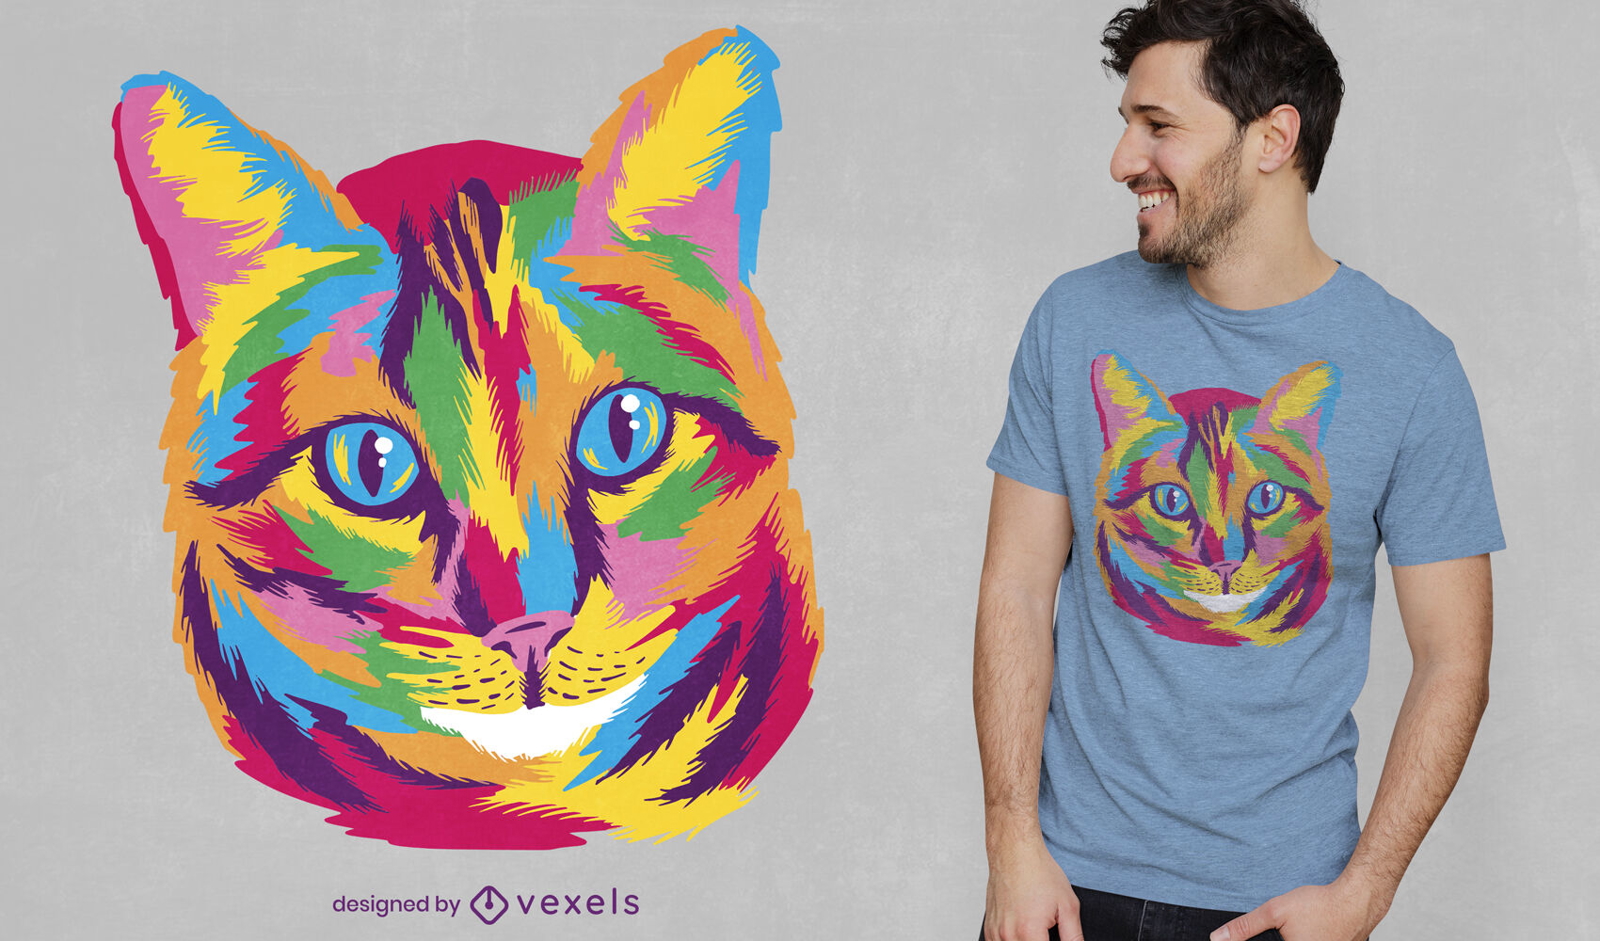 Design de t-shirt de cara de animal de gato colorido